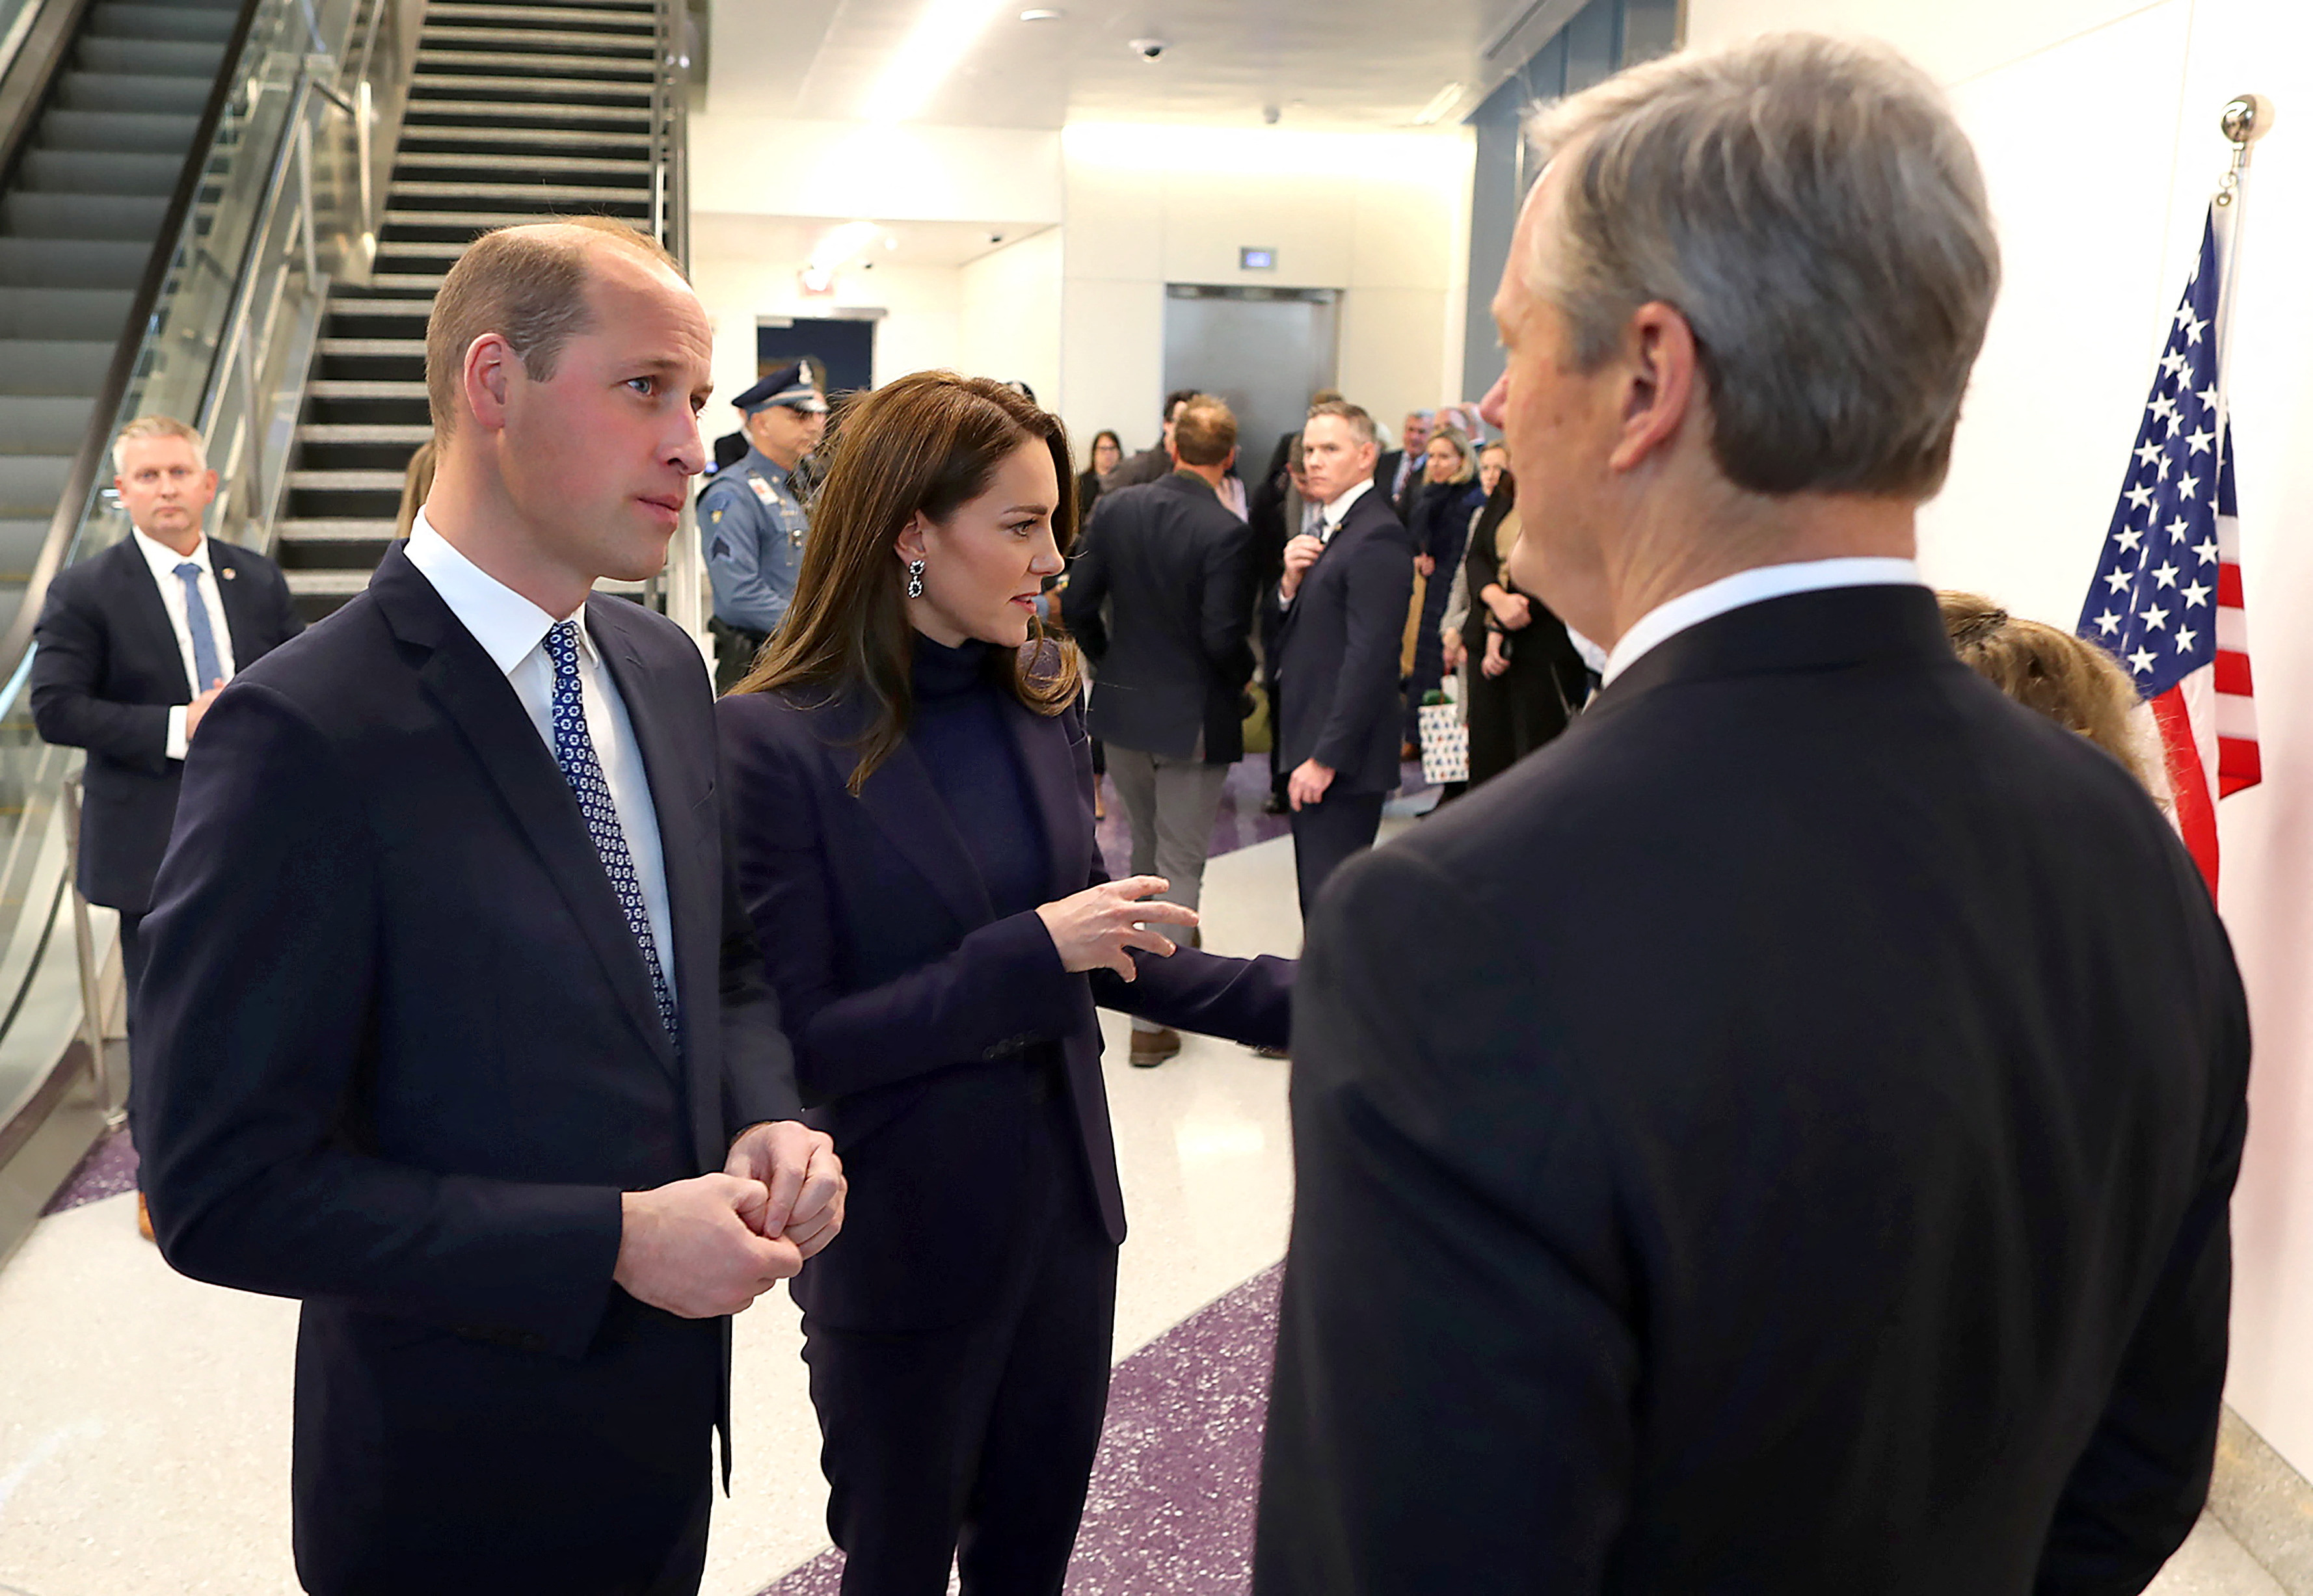 William y Kate son recibidos por el gobernador de Massachusetts, Charlie Baker, en el aeropuerto de Logan, Boston, el 30 de noviembre de 2022 (John Tlumacki/REUTERS)